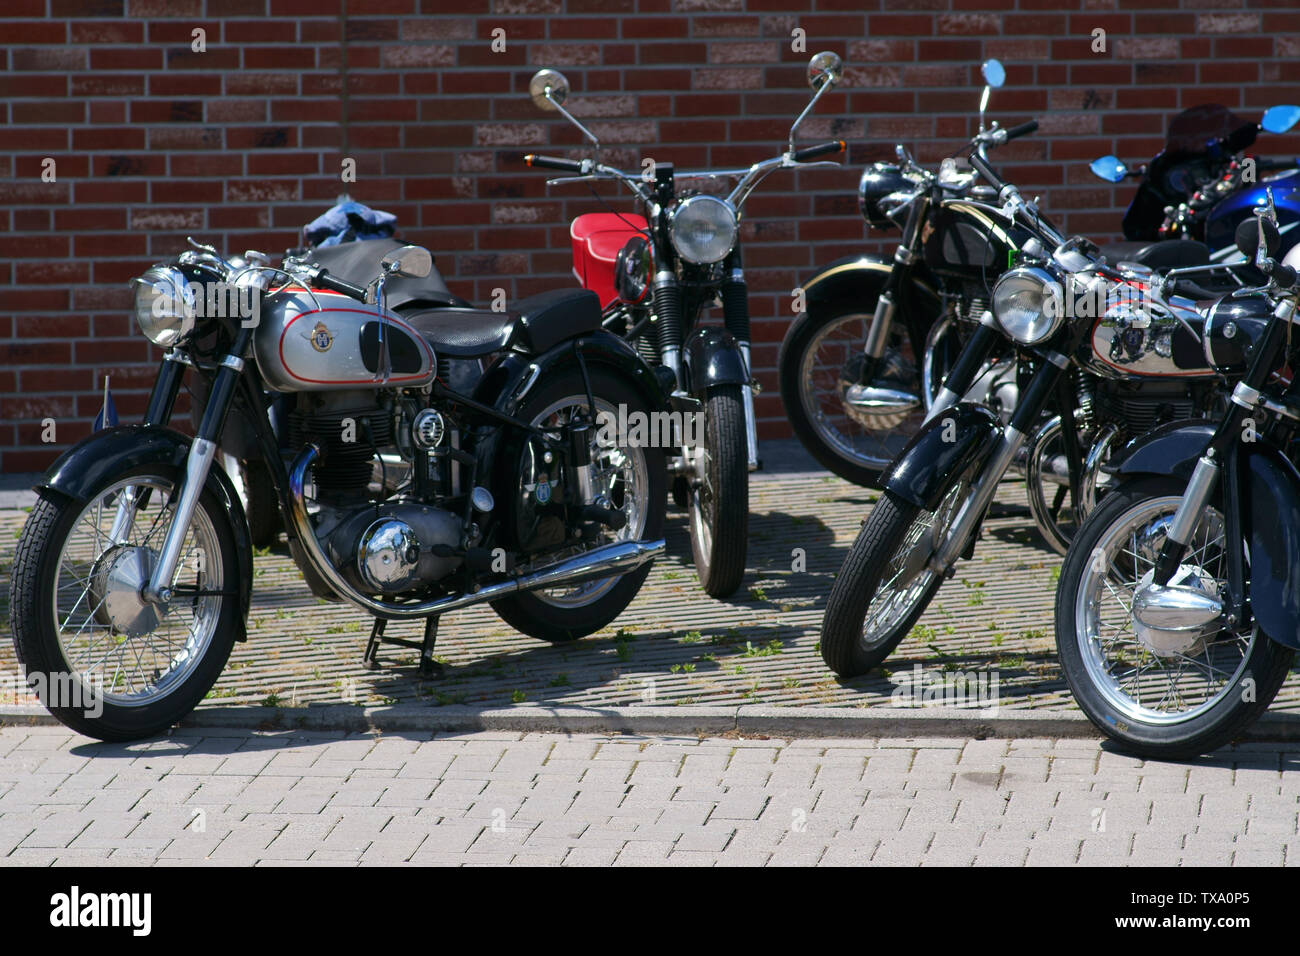 Bad Homburg, Allemagne - 09 juin 2019 : divers modèles oldtimer du fabricant de moto Horex sur un parking sur Juin 09, 2019 à Bad Homburg. Banque D'Images